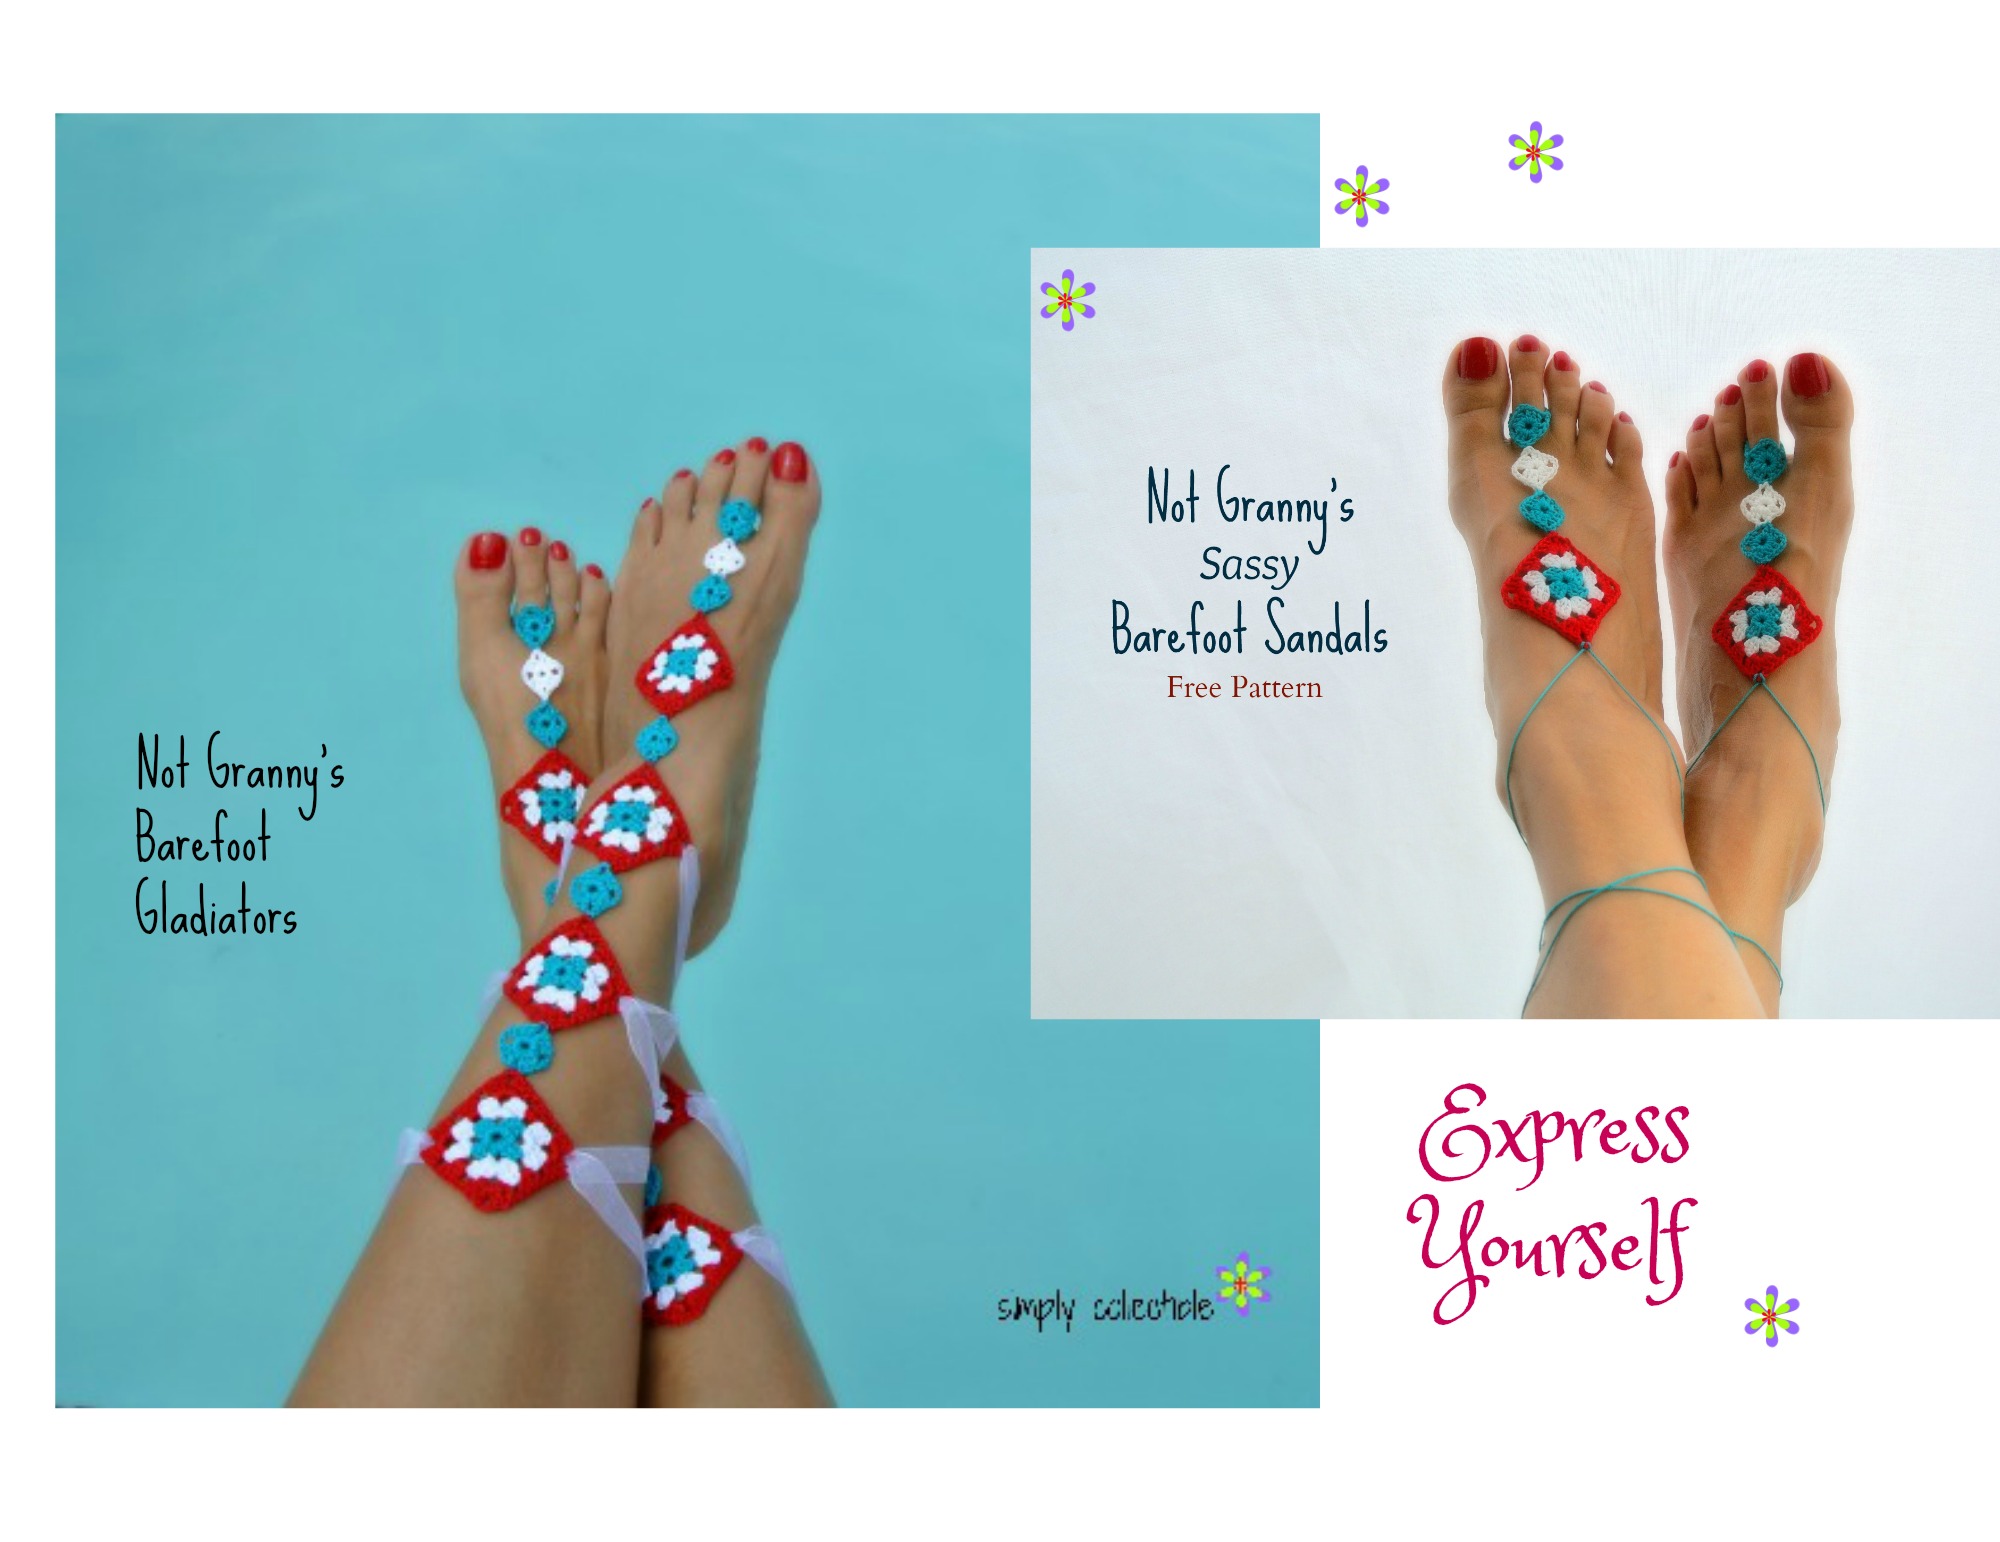 Express Yourself – Summer Fun! Free Barefoot Sandals crochet patterns